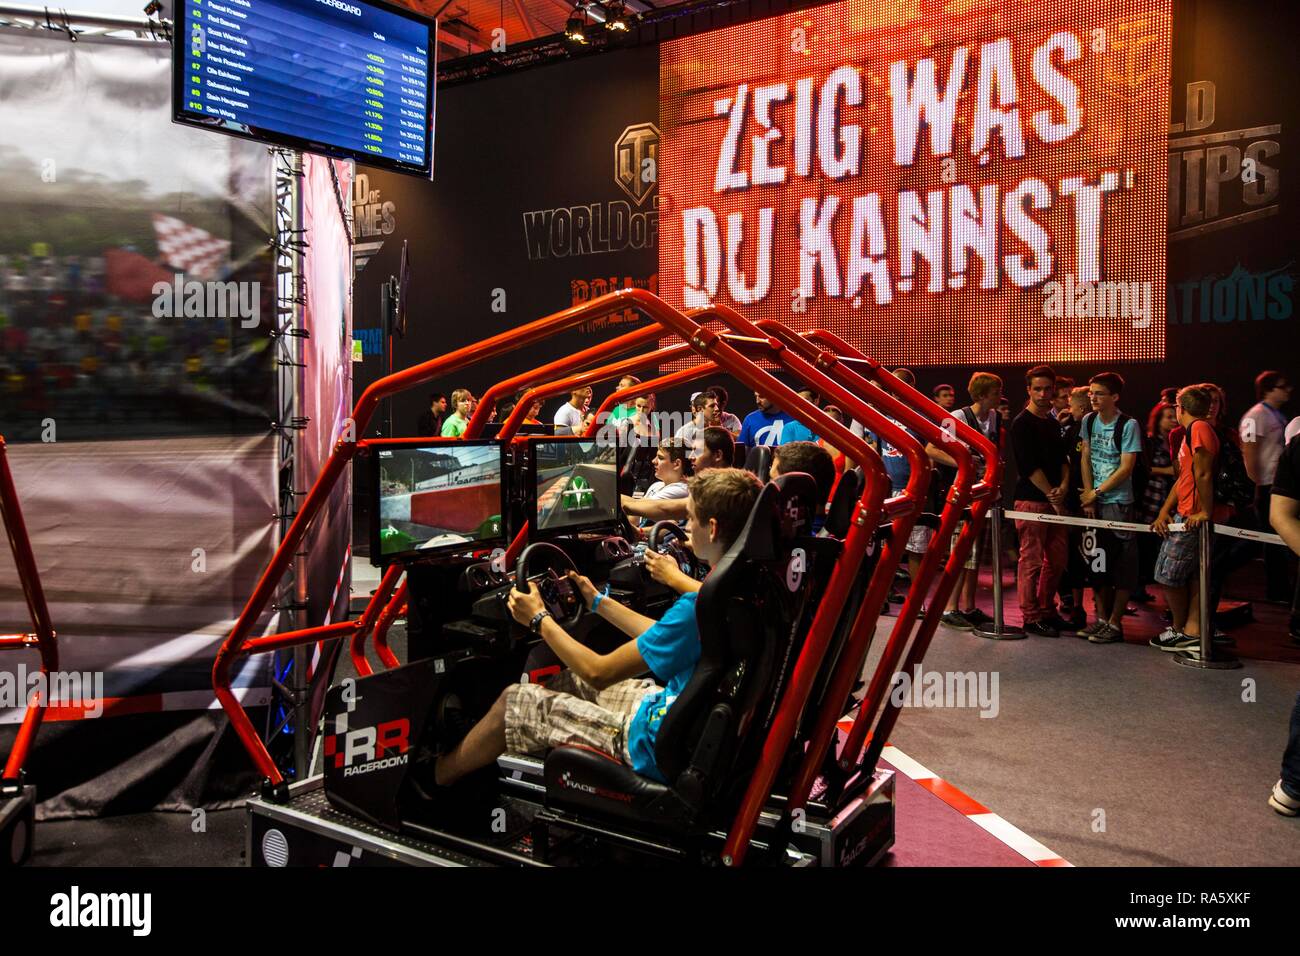 Simulador de carreras de coches, juegos de video, gamescom, la feria más grande del mundo para electrónica de consumo interactivo Foto de stock